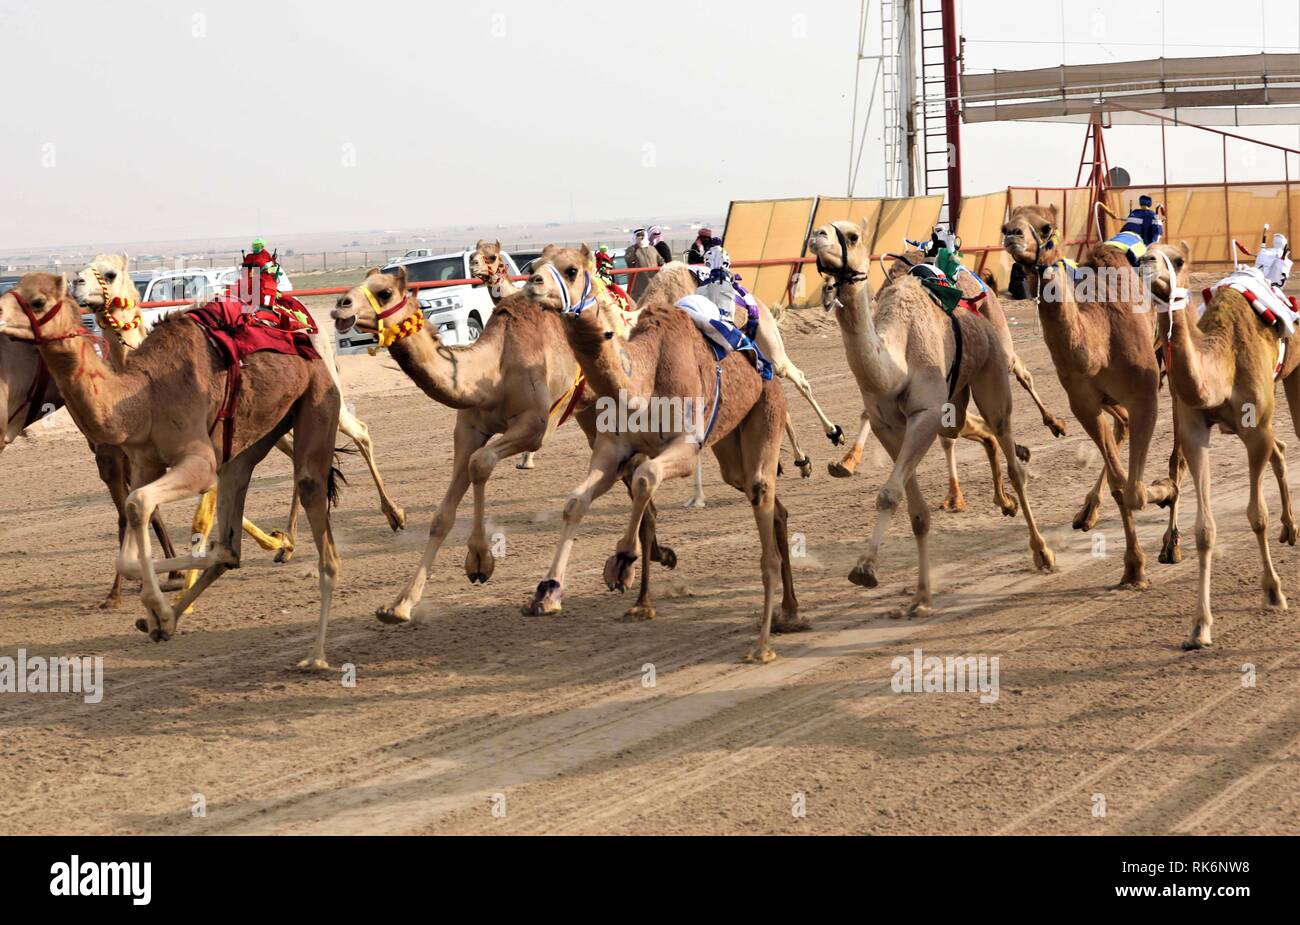 Le Gouvernorat d'Al Ahmadi, le Koweït. Feb 9, 2019. Les chameaux en concurrence au cours de la 19e course de chameaux du Koweït Le Koweït au tournoi Club courses de chameaux dans le gouvernorat d'Al-Ahmadi, le Koweït, le 9 février 2019. Crédit : Joseph Shagra/Xinhua/Alamy Live News Banque D'Images